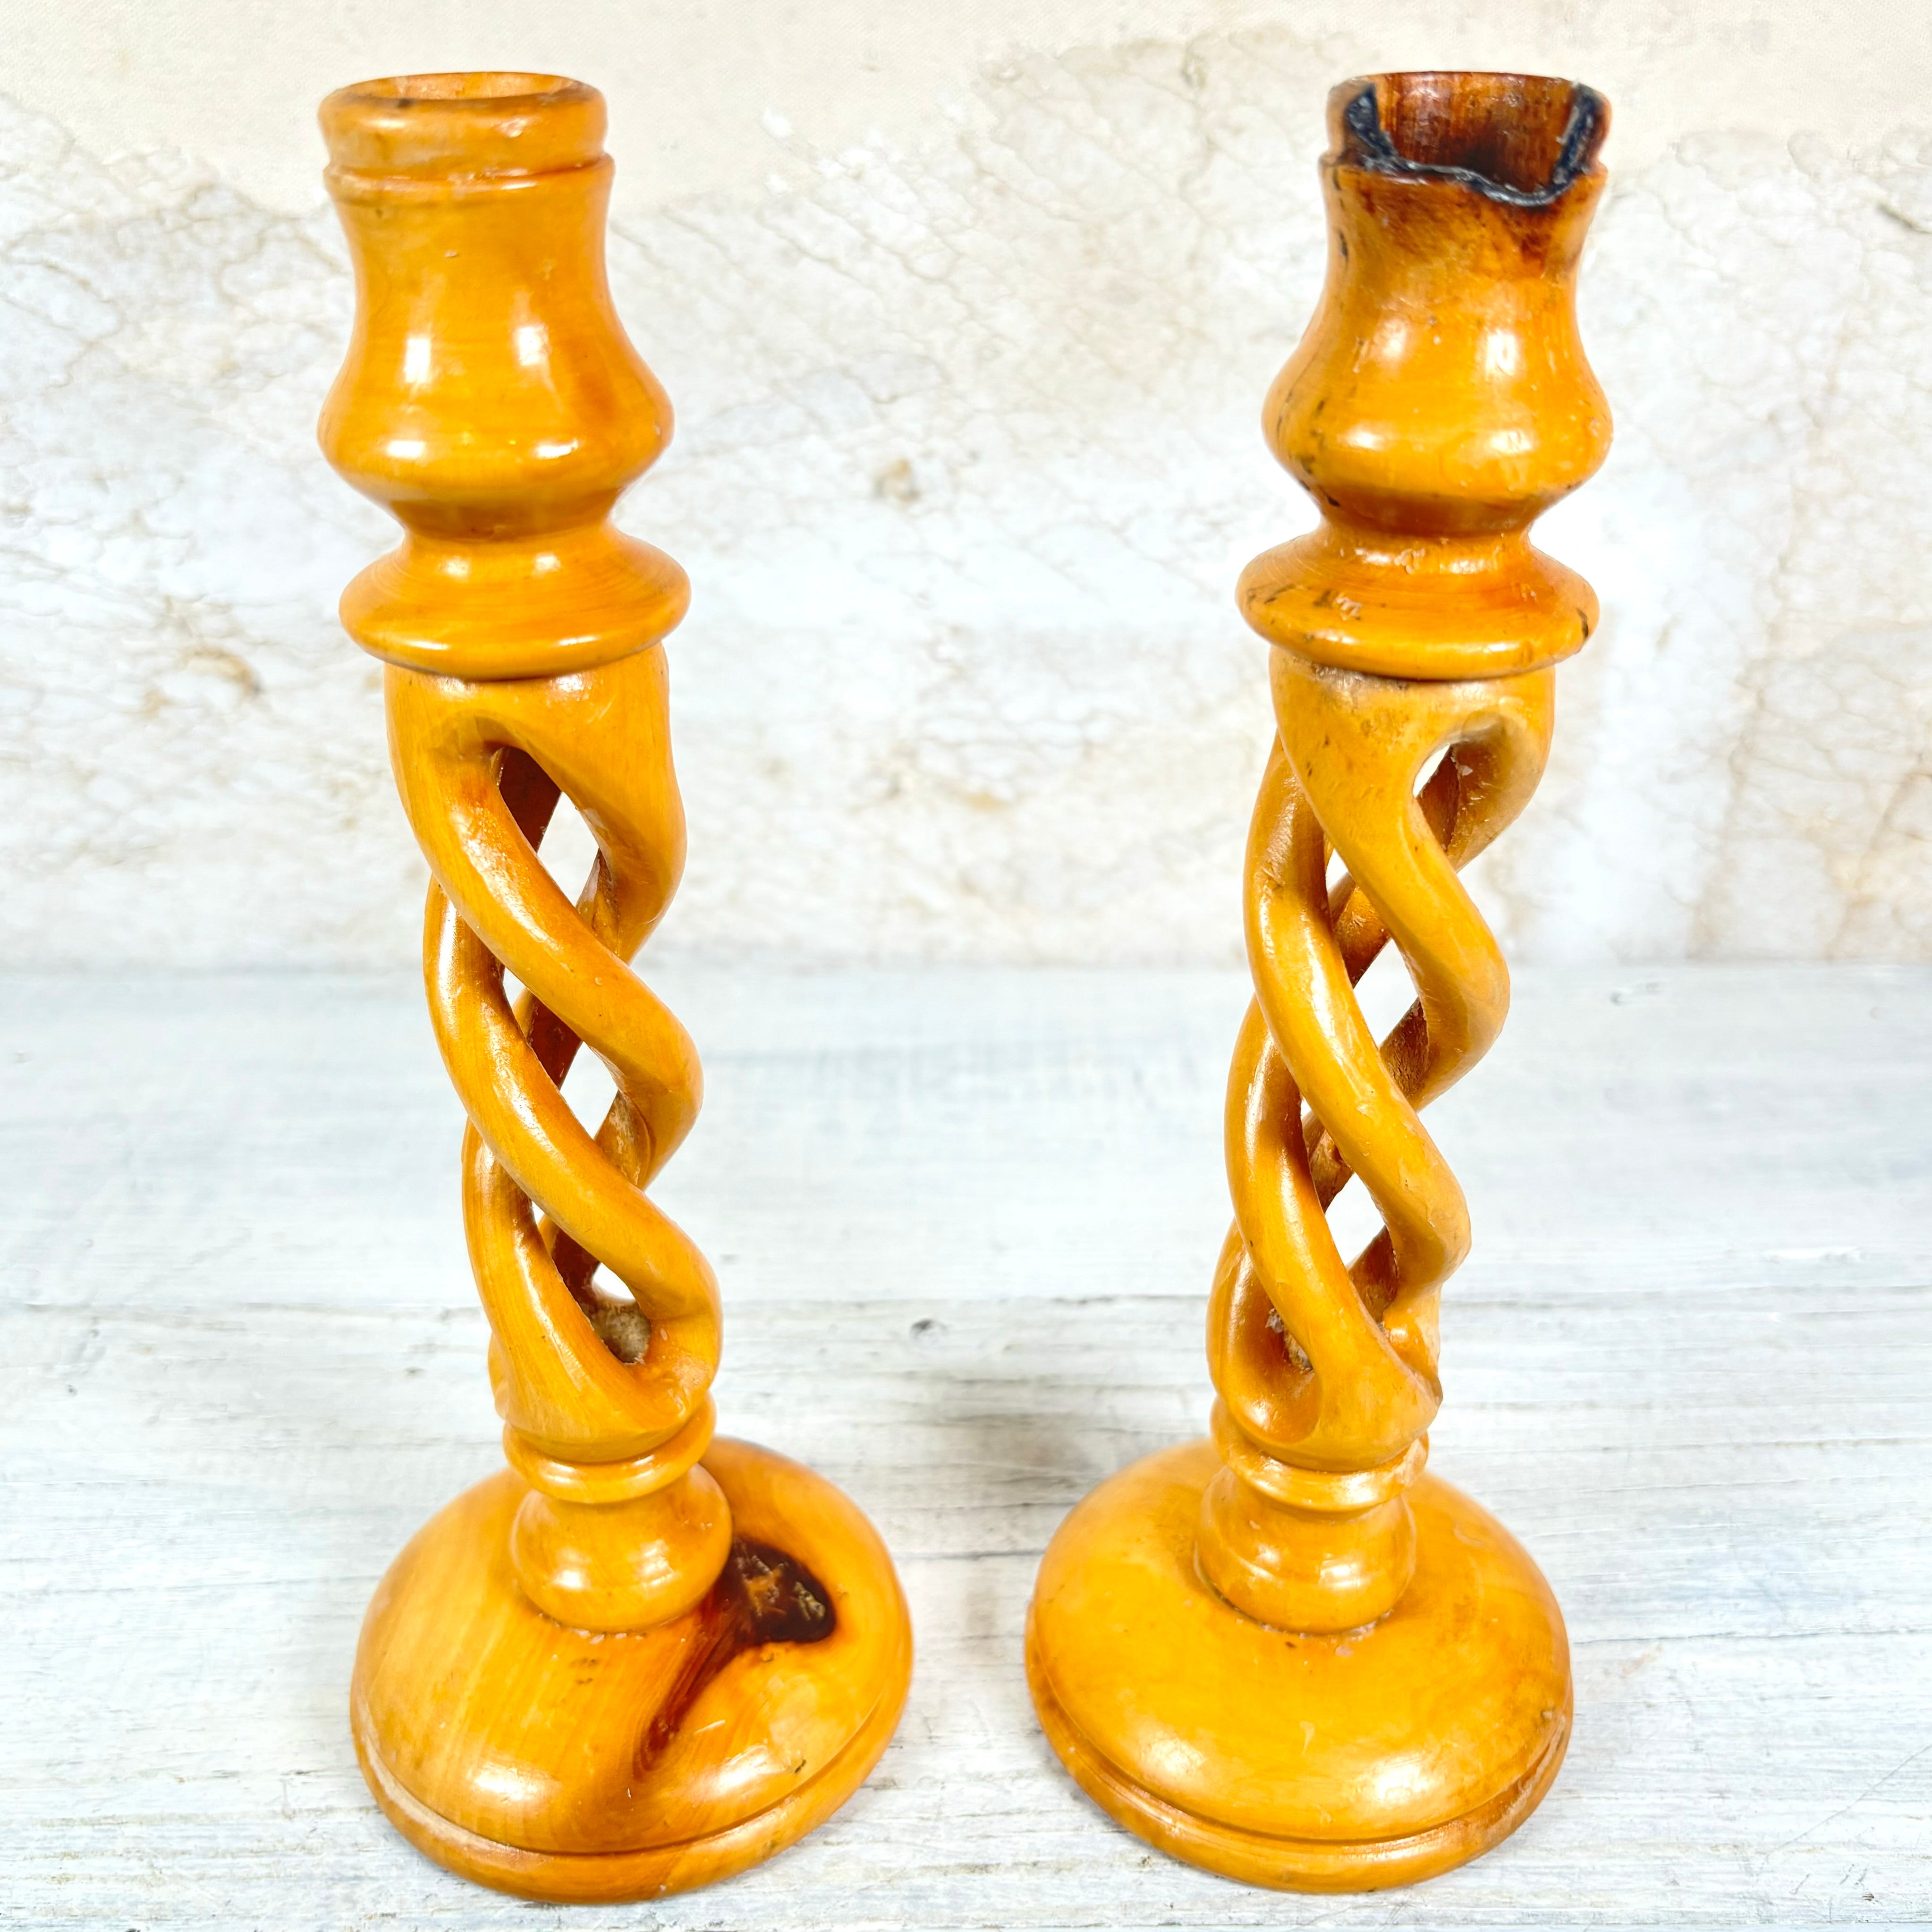 Vintage Carved Olive Wood Candlesticks Set of Two